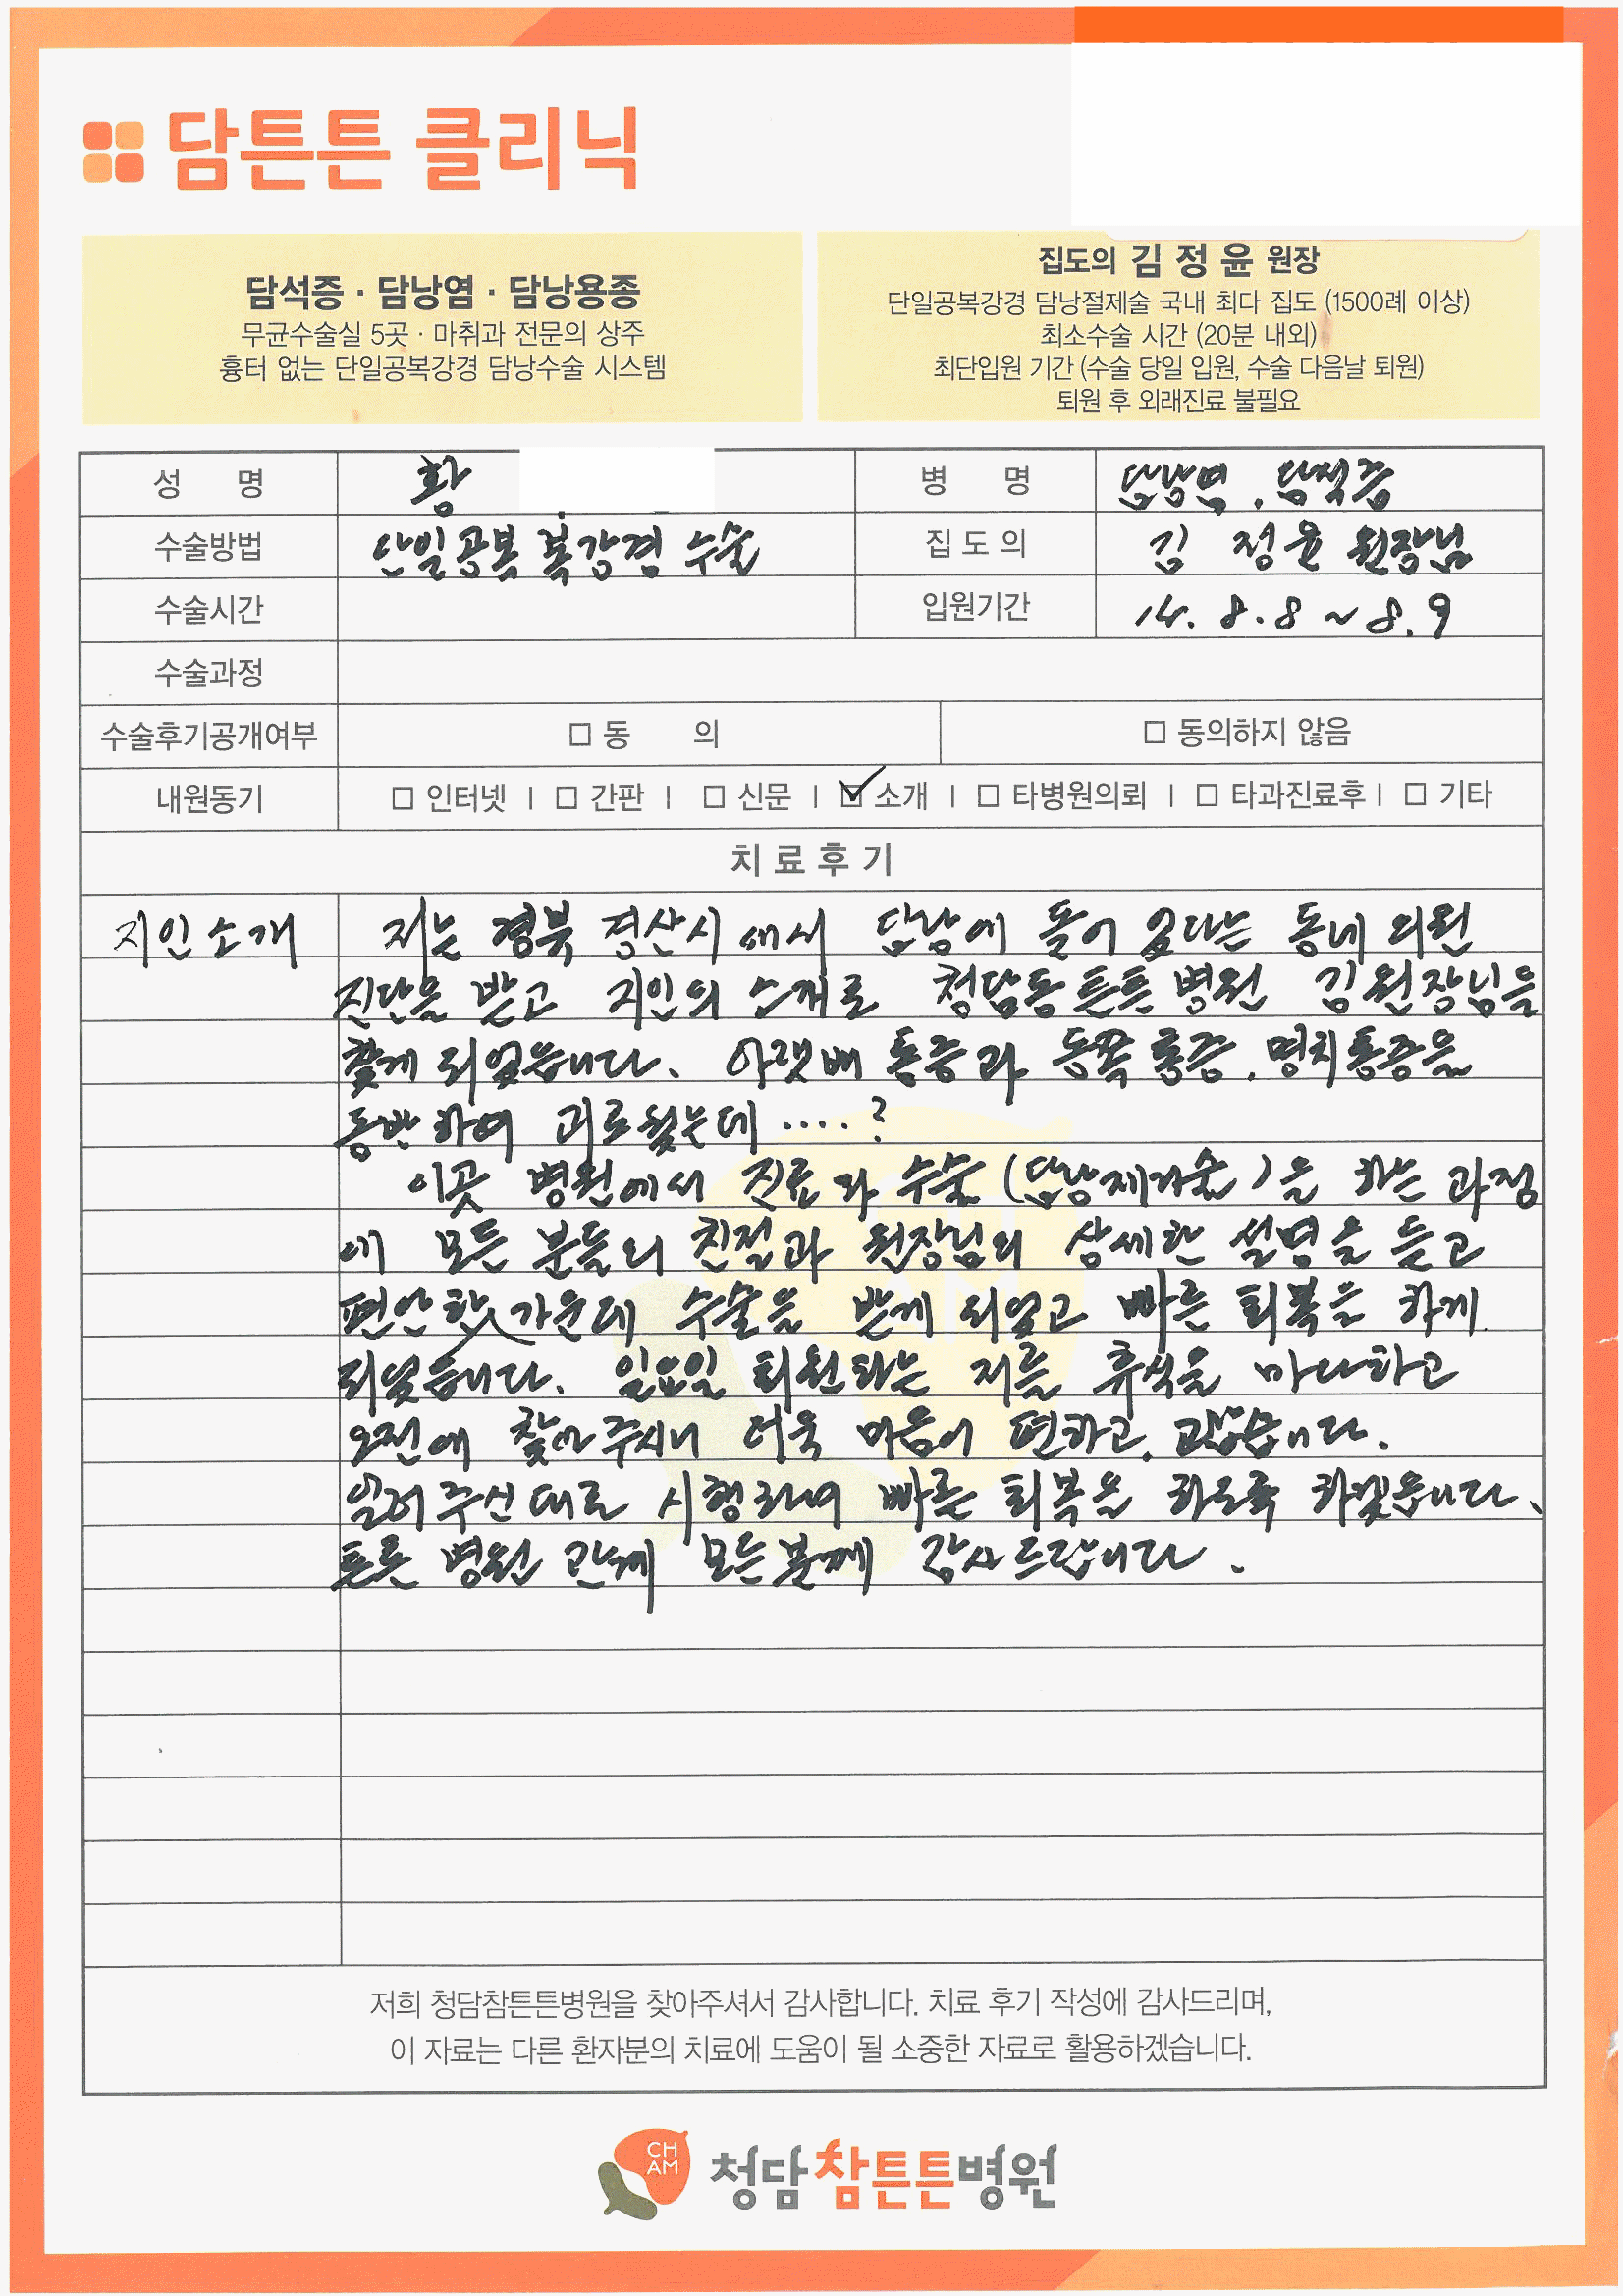 2015-08-08단일 복강경 담석 수술_담석증_수술후기.gif